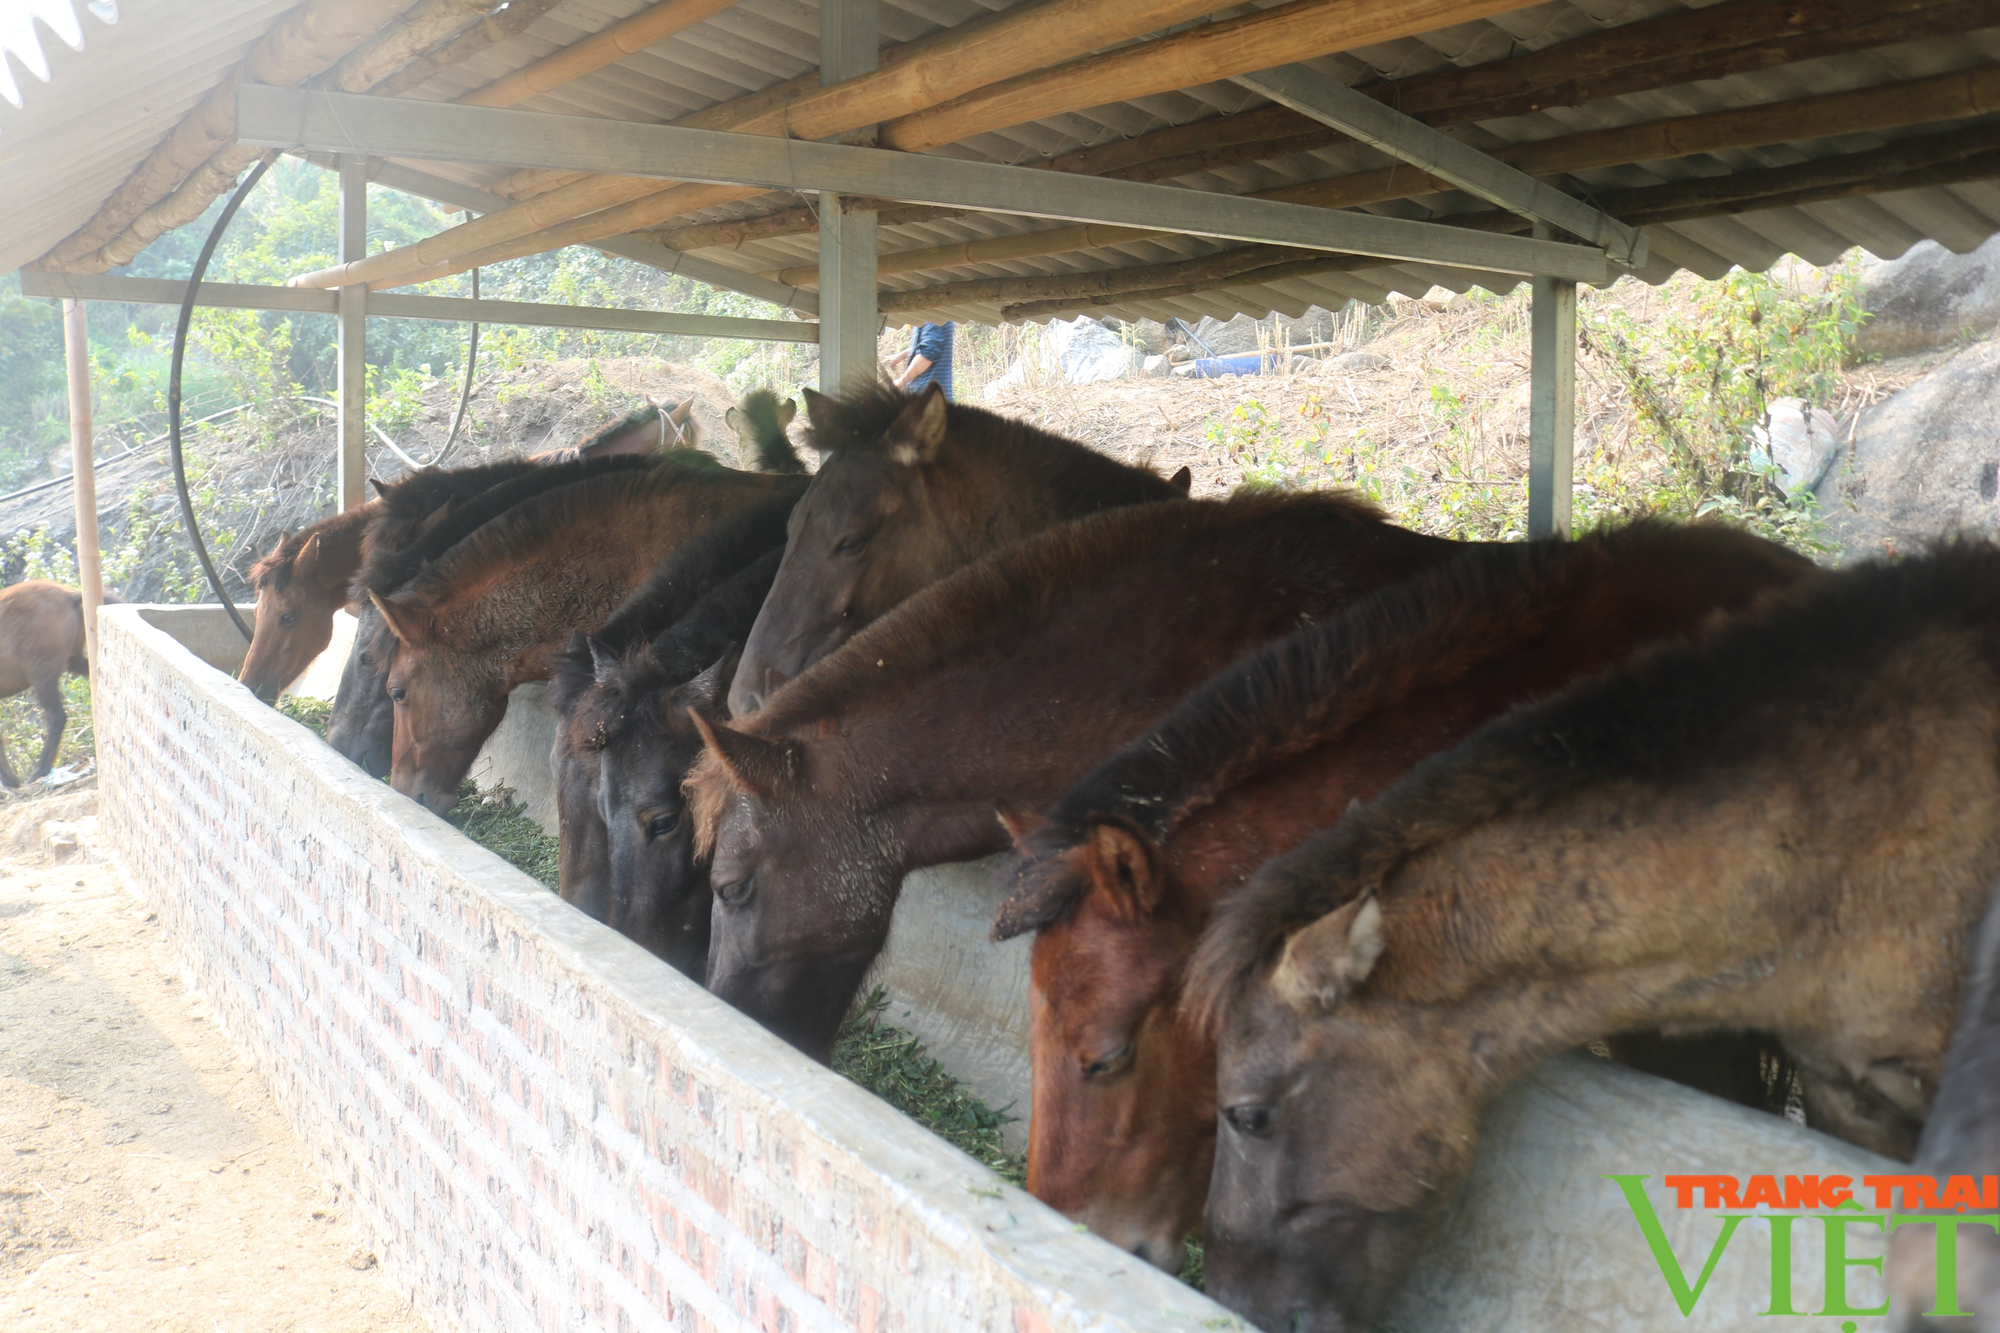  Một nông dân Lào Cai giàu lên nhờ nuôi ngựa theo hướng hàng hóa  - Ảnh 3.